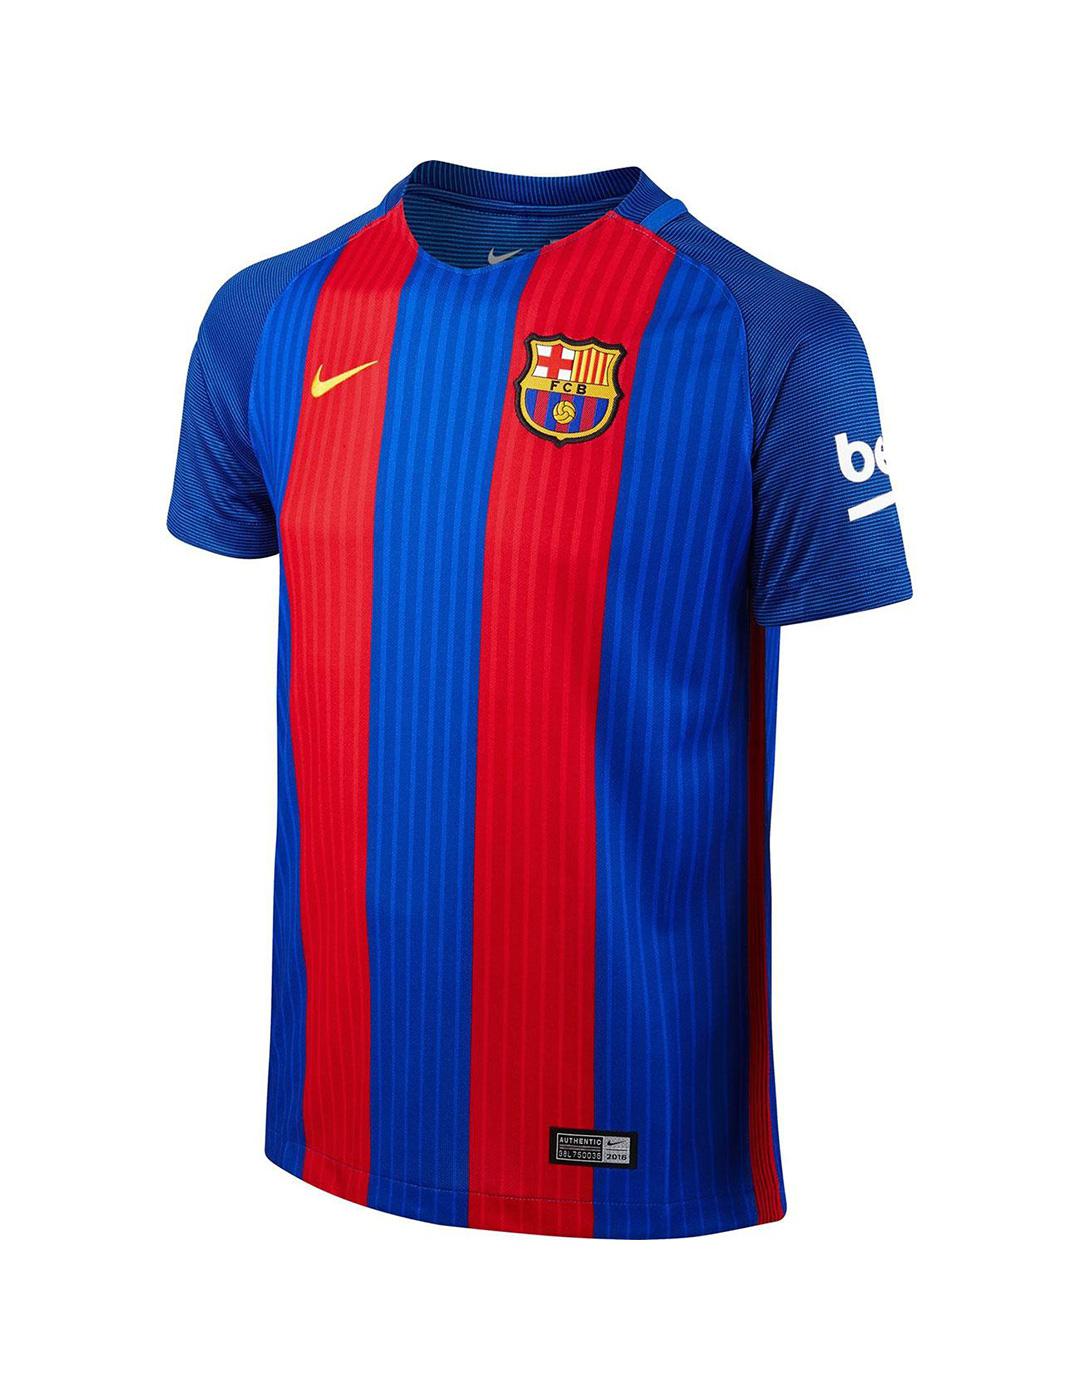 Camiseta hombre - Trade Moda Barcelona